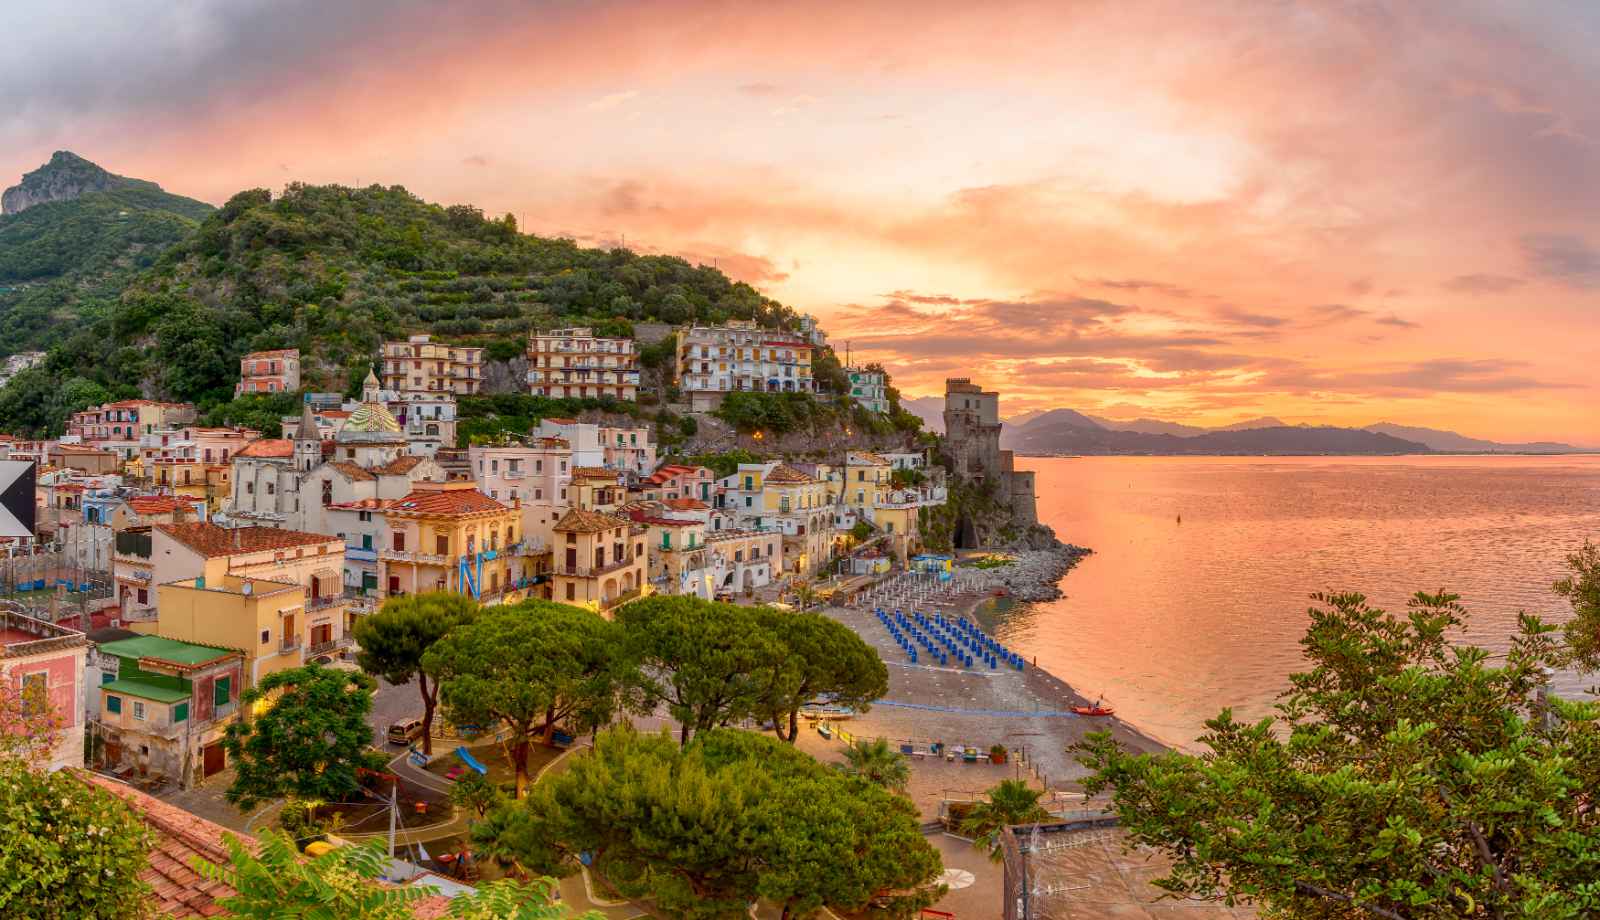 Best Tours in Cinque Terre vs Amalfi Coast